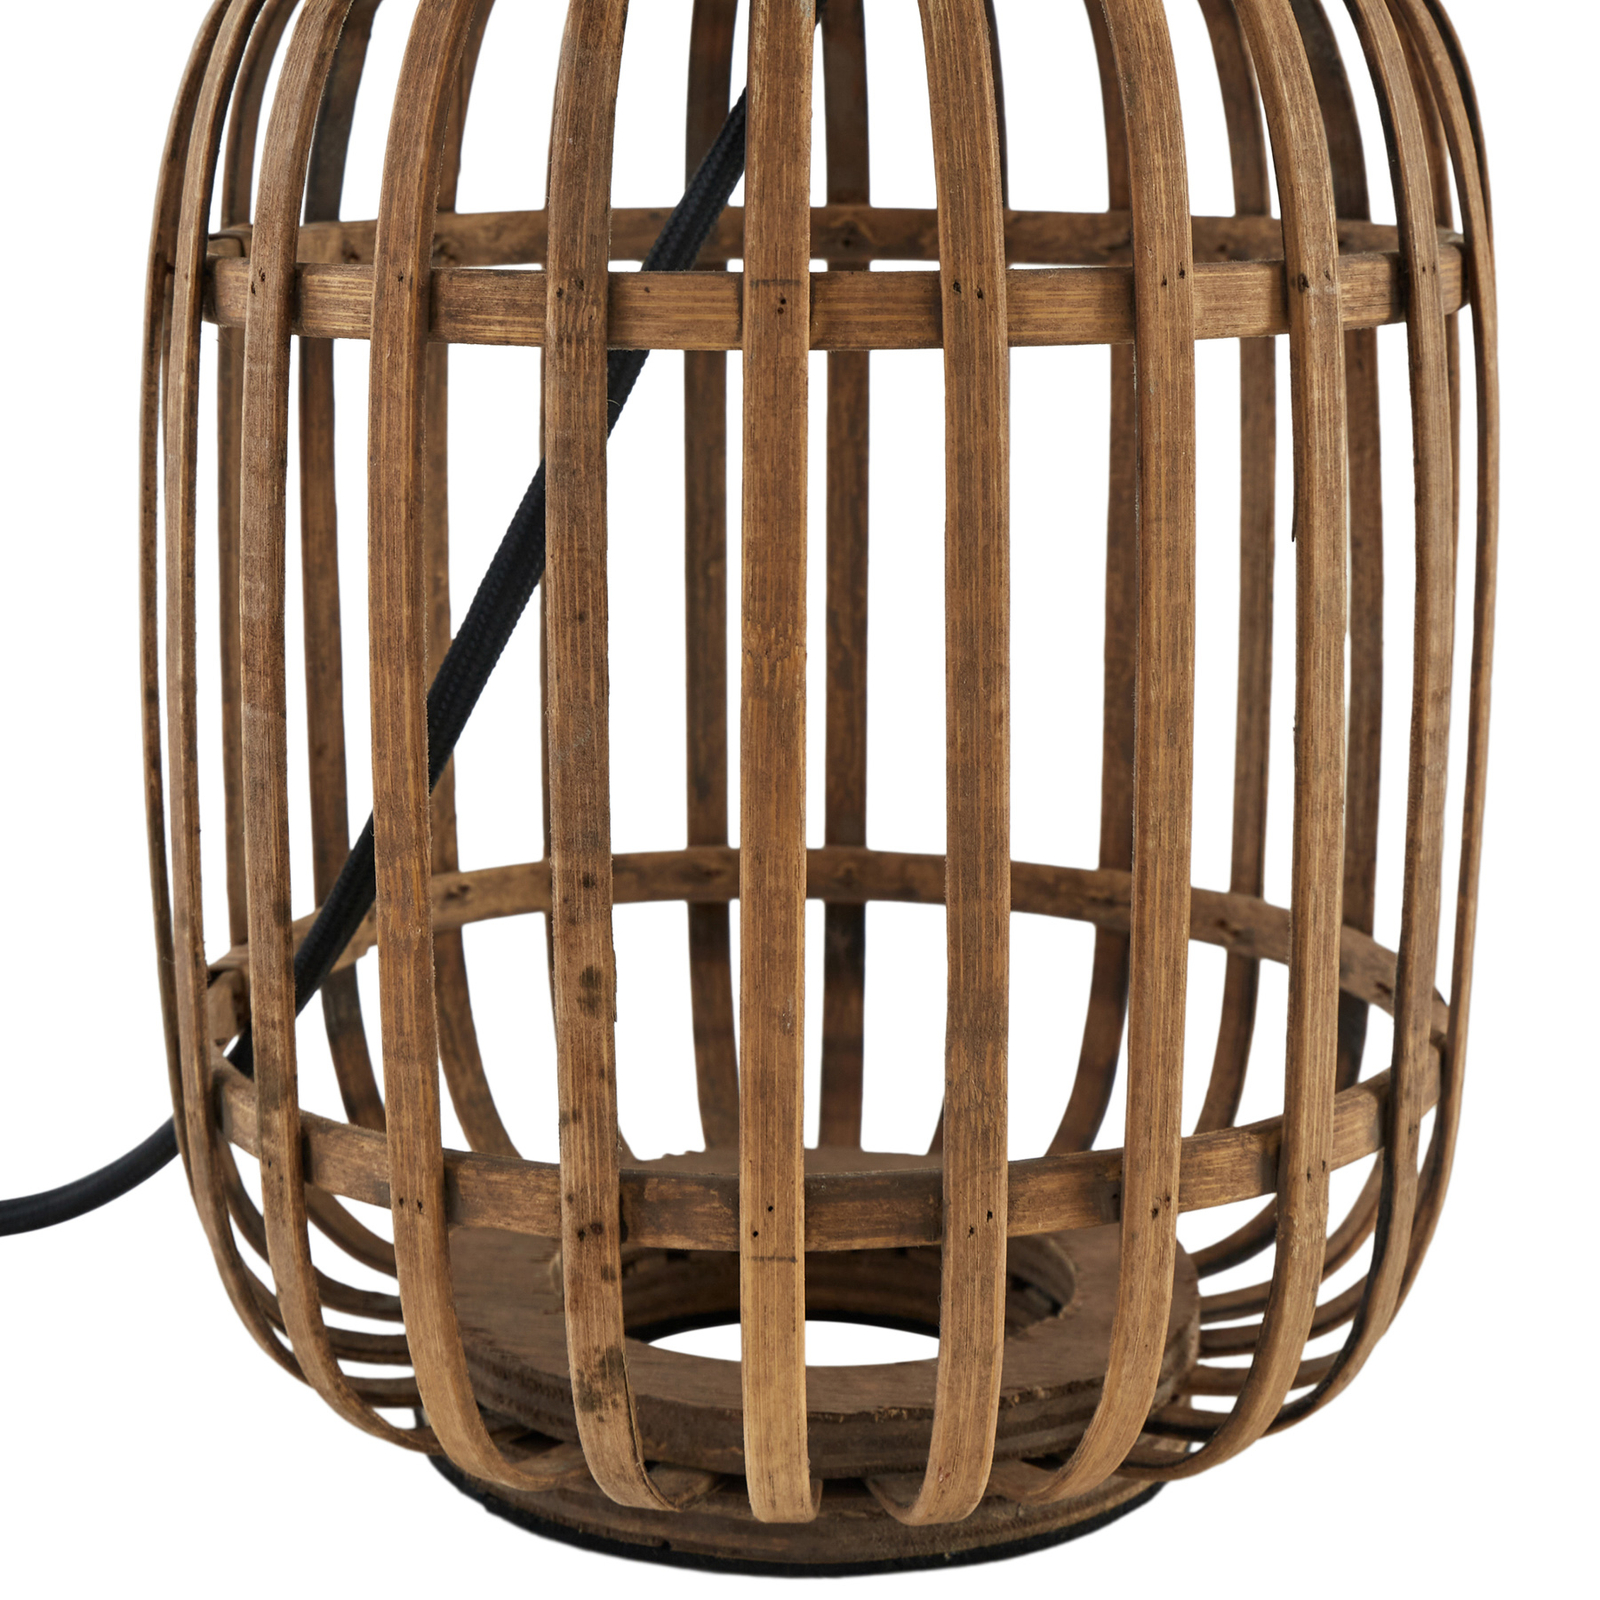 Lindby asztali lámpa Marzanna, szürke, bambusz, 42,5 cm, E27